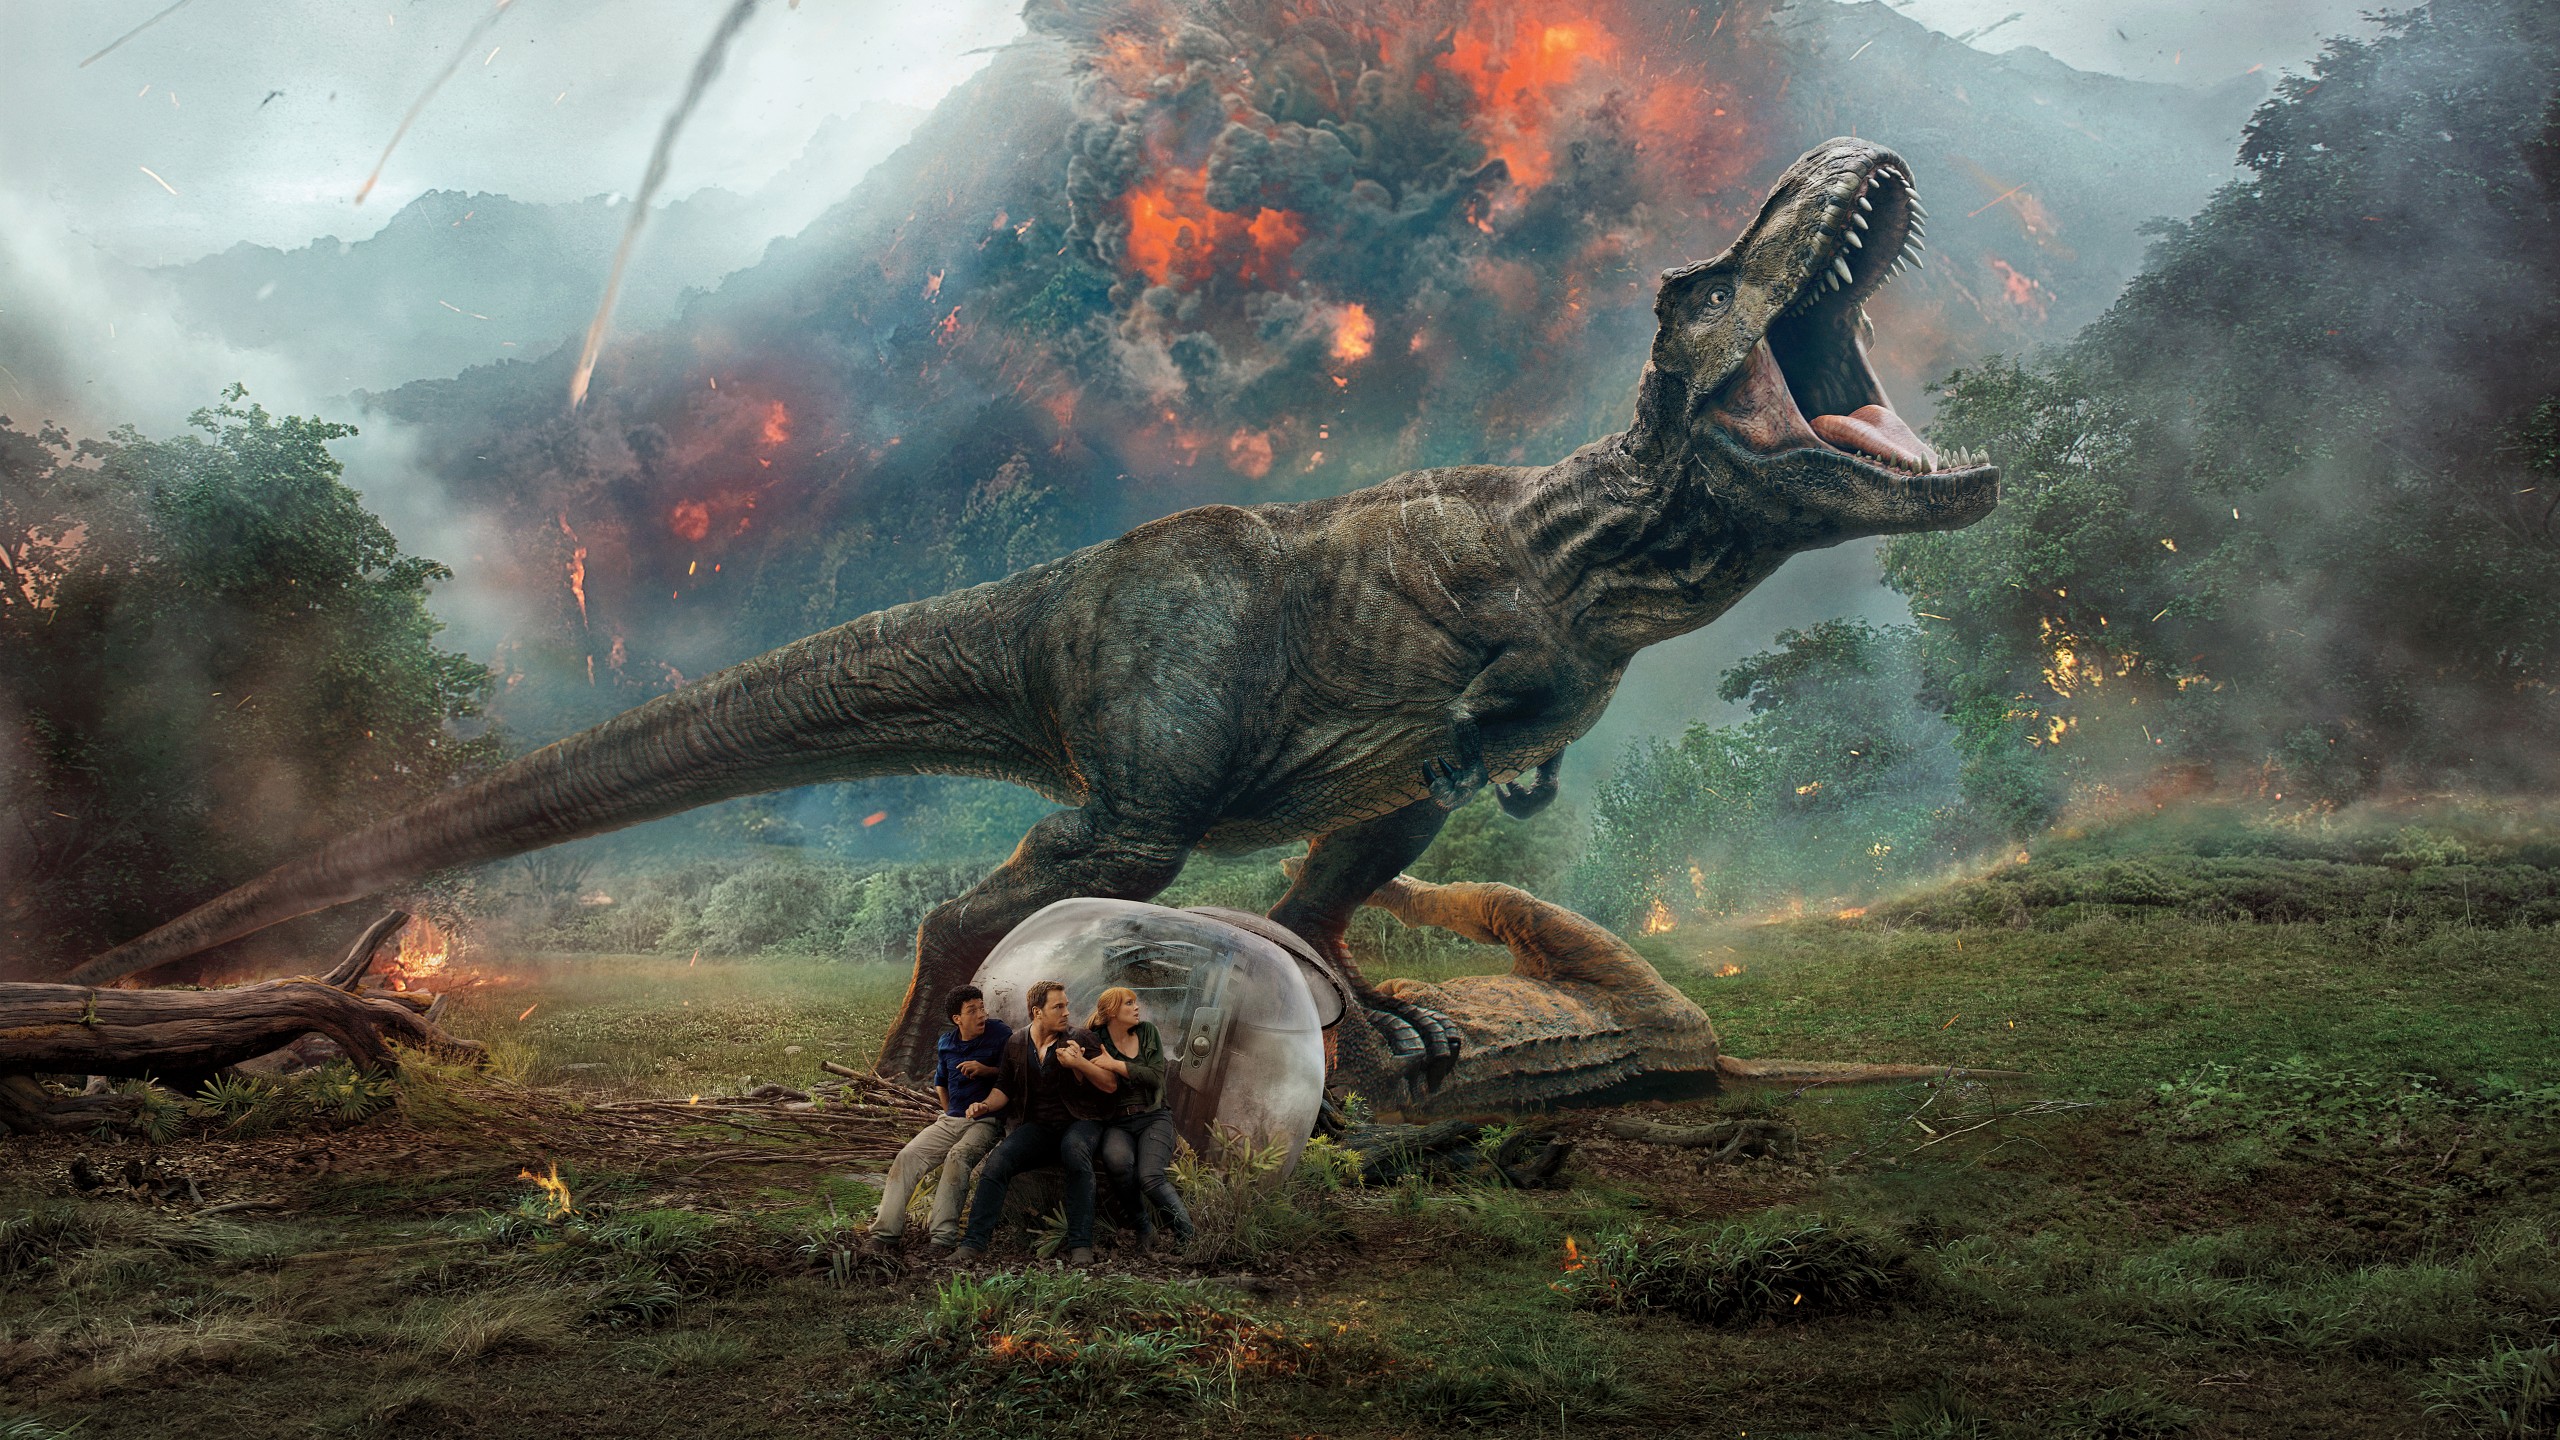 Zagraj to jeszcze raz, T-Rex – recenzja filmu „Jurassic World: Upadłe królestwo”